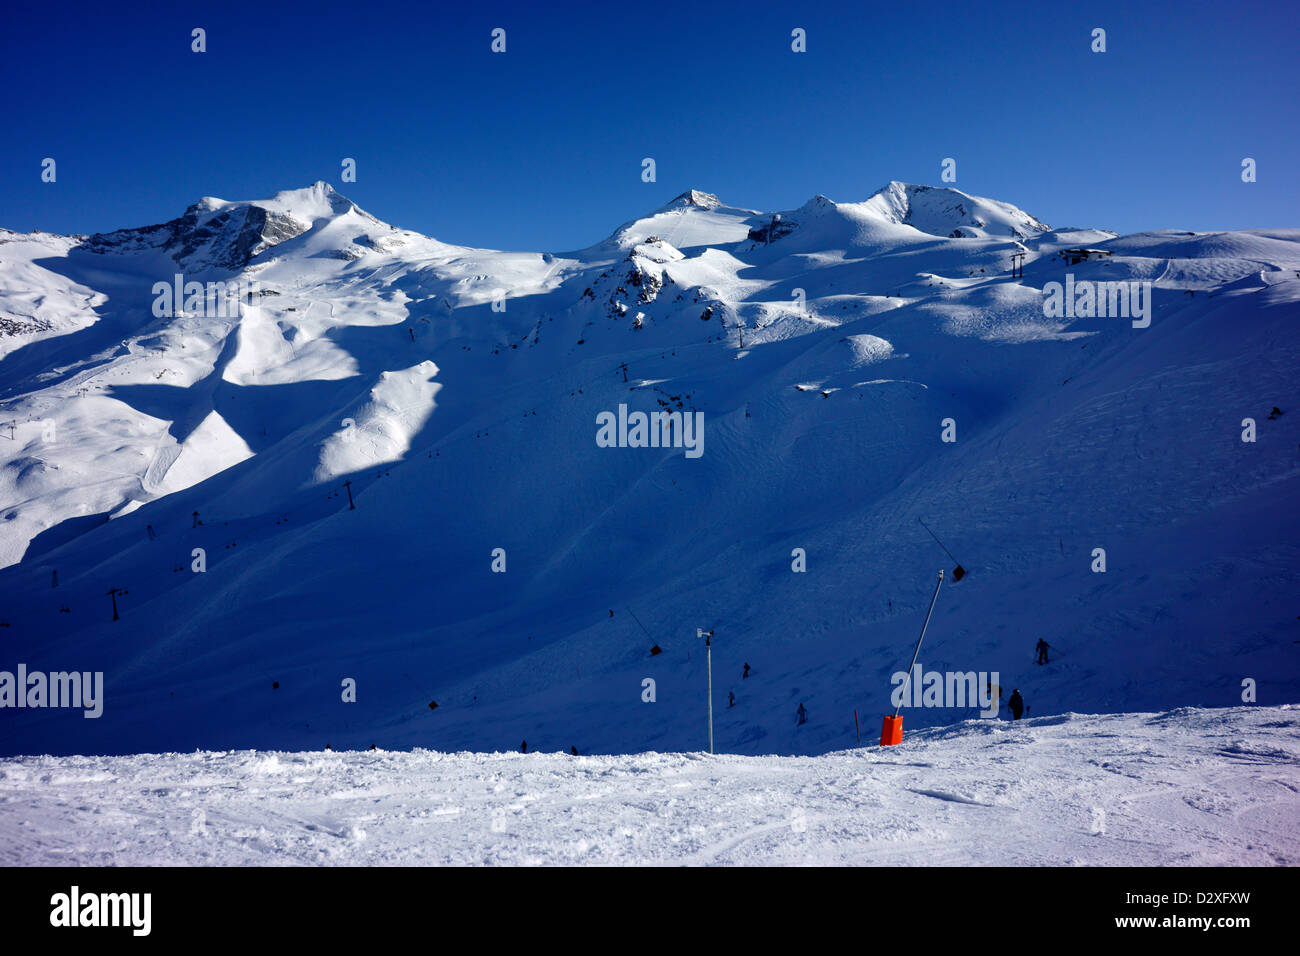 Skiarea of Stubai glacier, winter, Tyrol, Austria Stock Photo